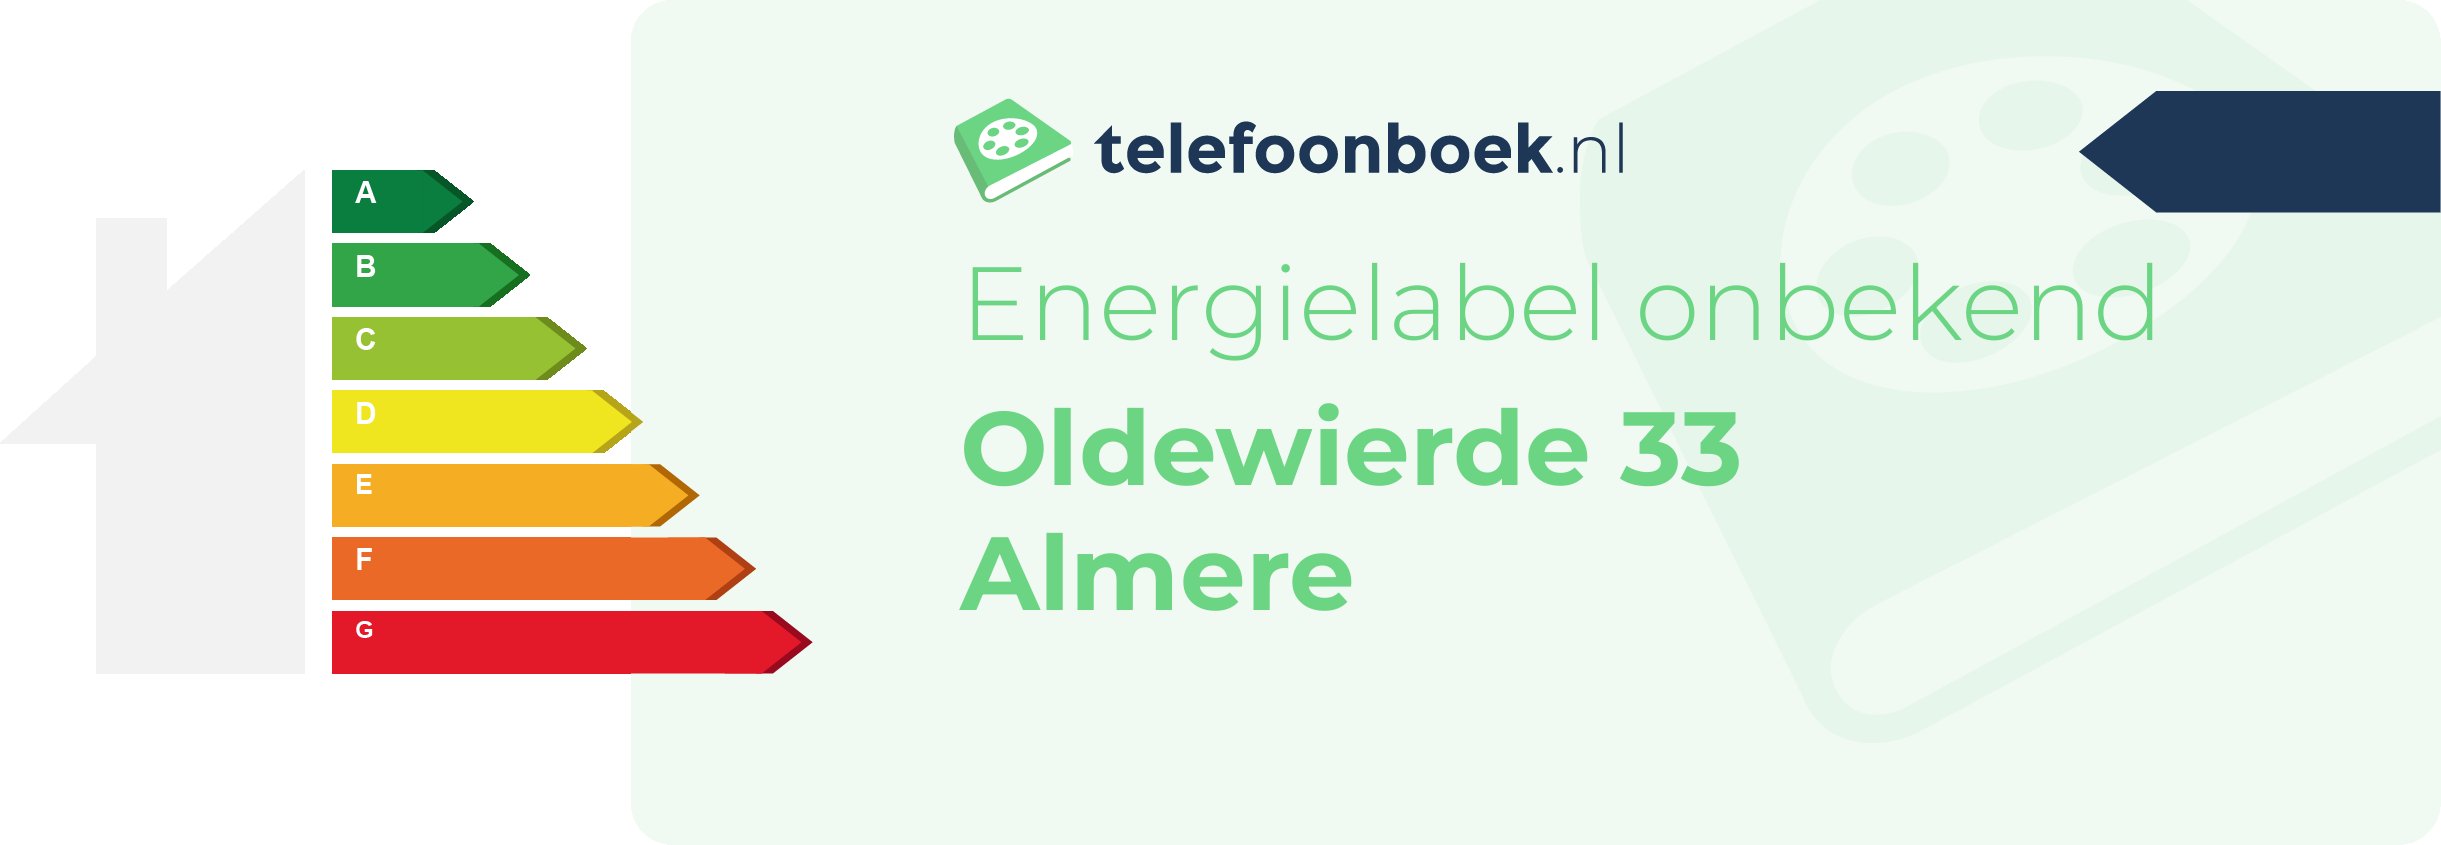 Energielabel Oldewierde 33 Almere